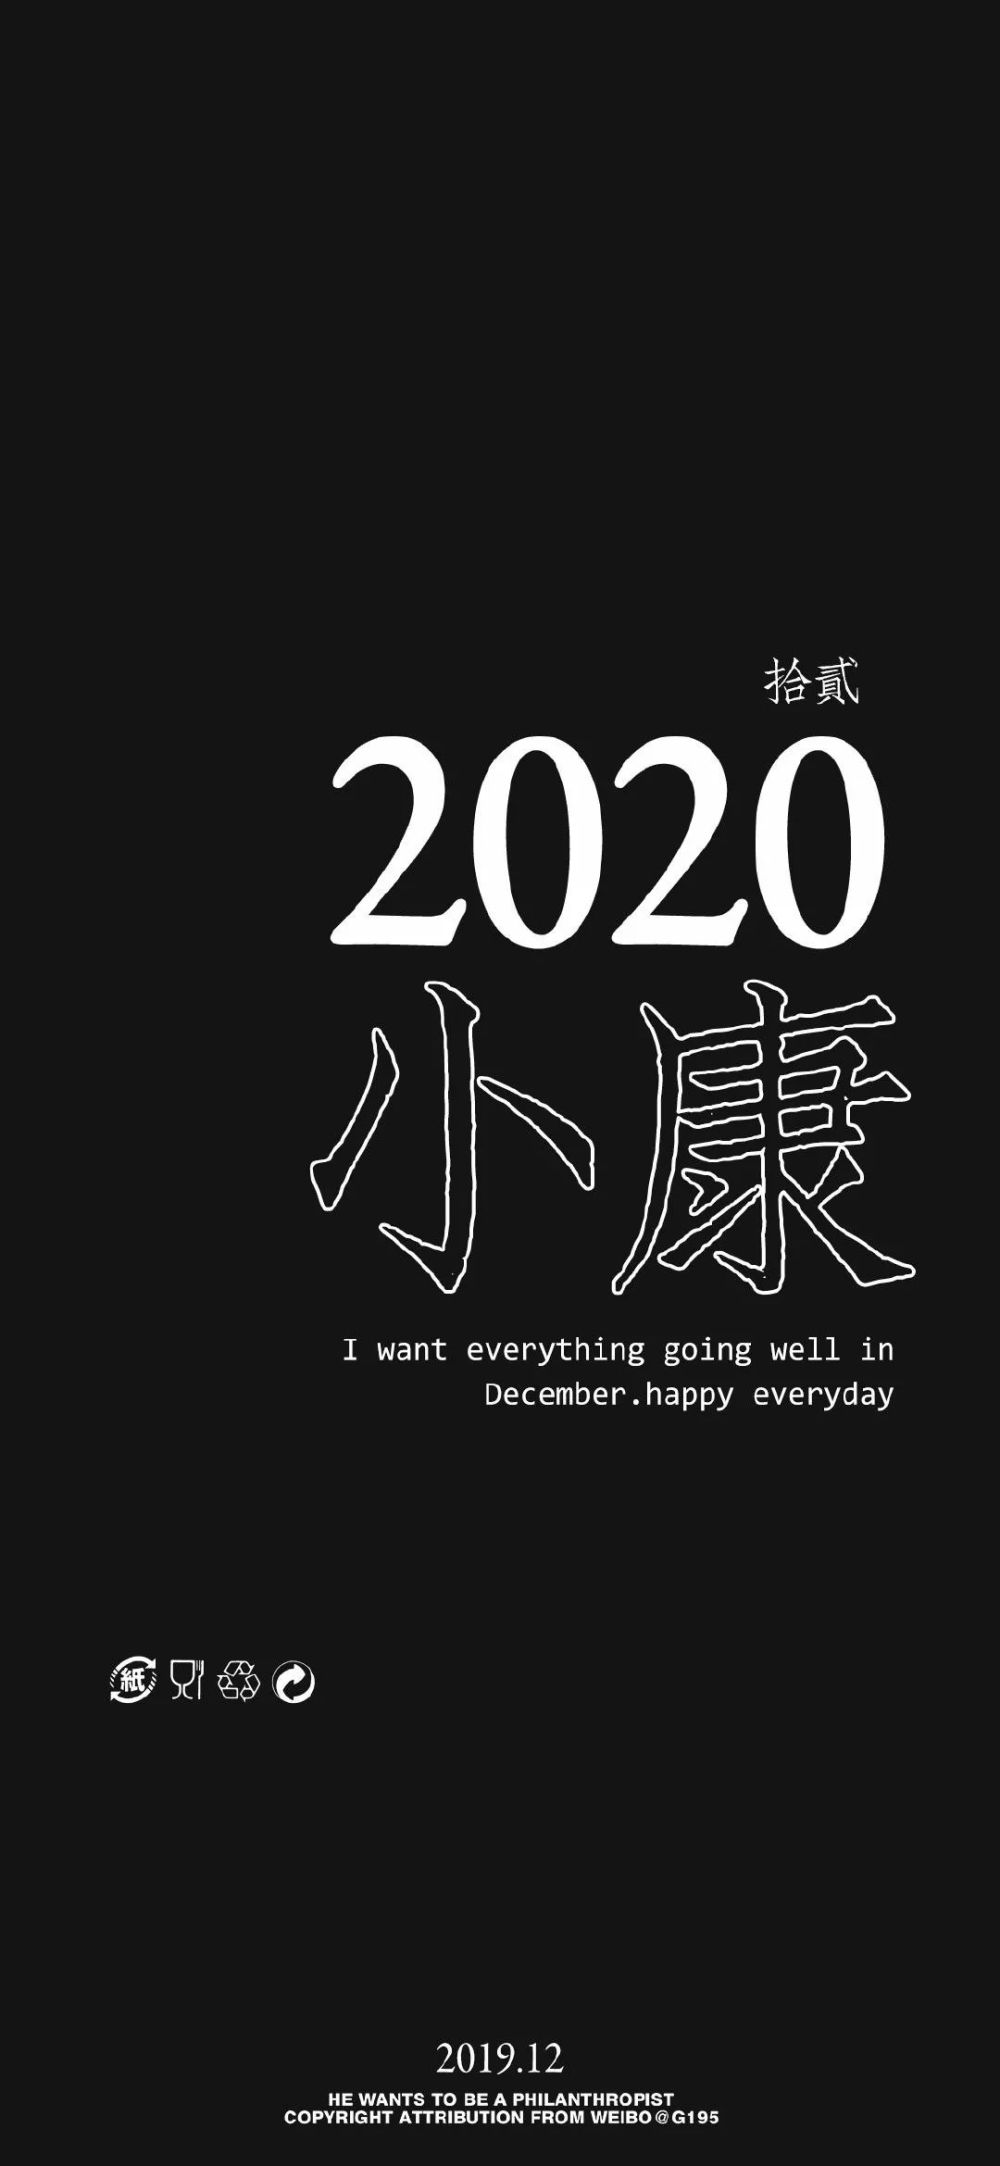 壁纸丨要2020年了,别再只是光说不做了!